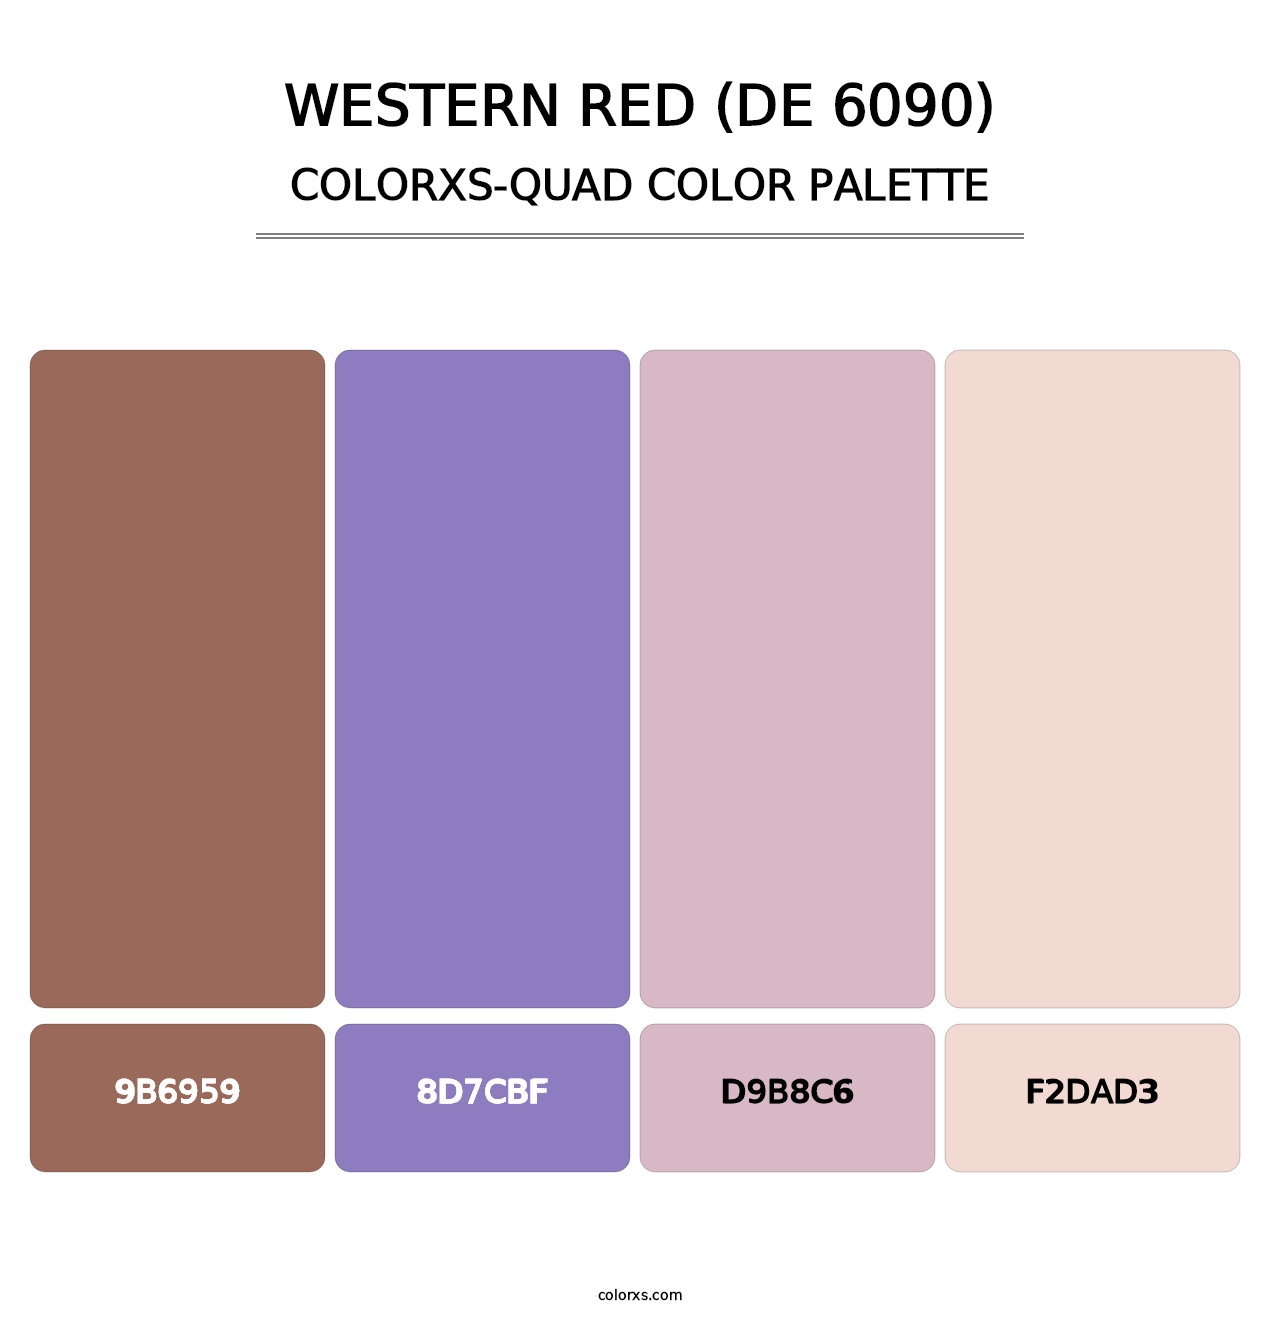 Western Red (DE 6090) - Colorxs Quad Palette